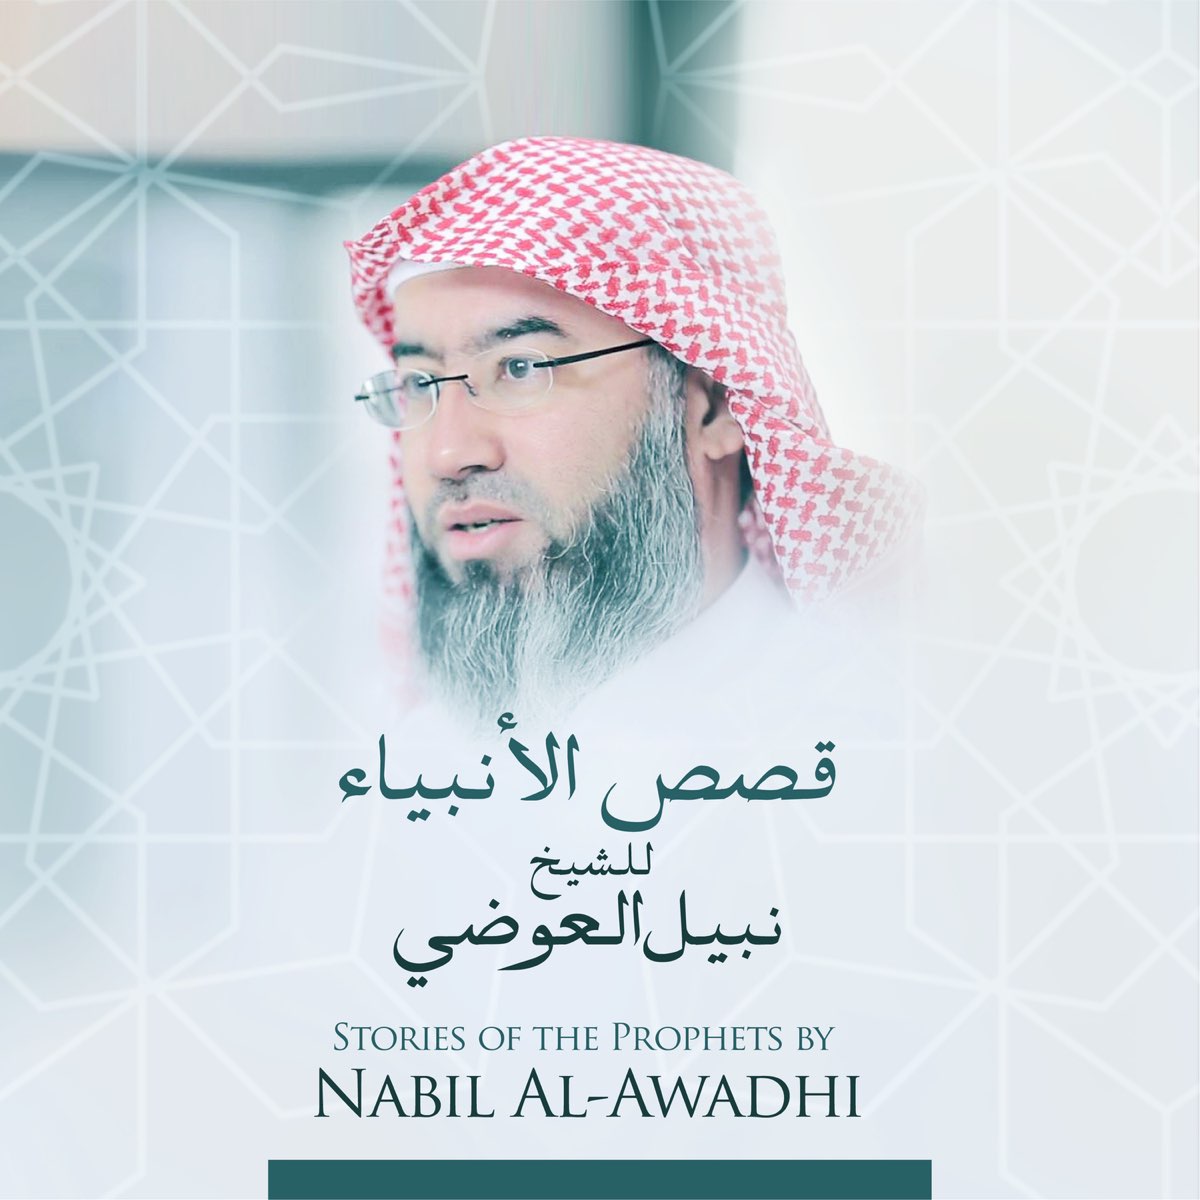 قصص الأنبياء للشيخ نبيل العوضي by Nabil Al-Awadhi on Apple Music